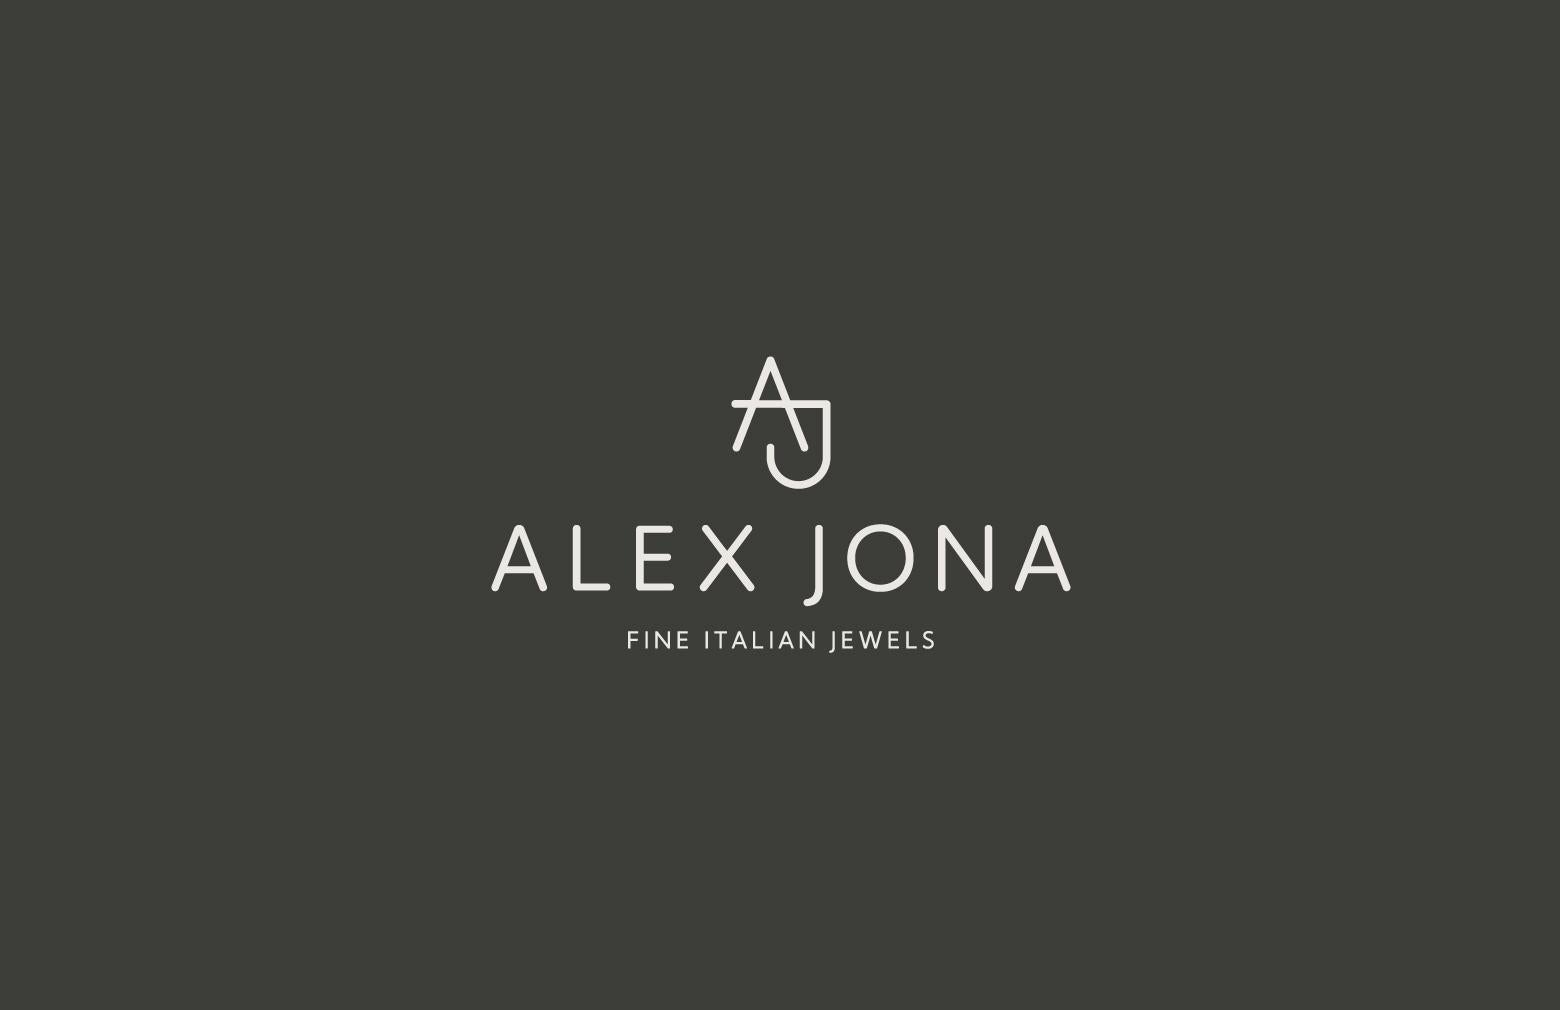 Alex Jona Onyx 18 Karat Pink Gold Pendant Earrings For Sale 5